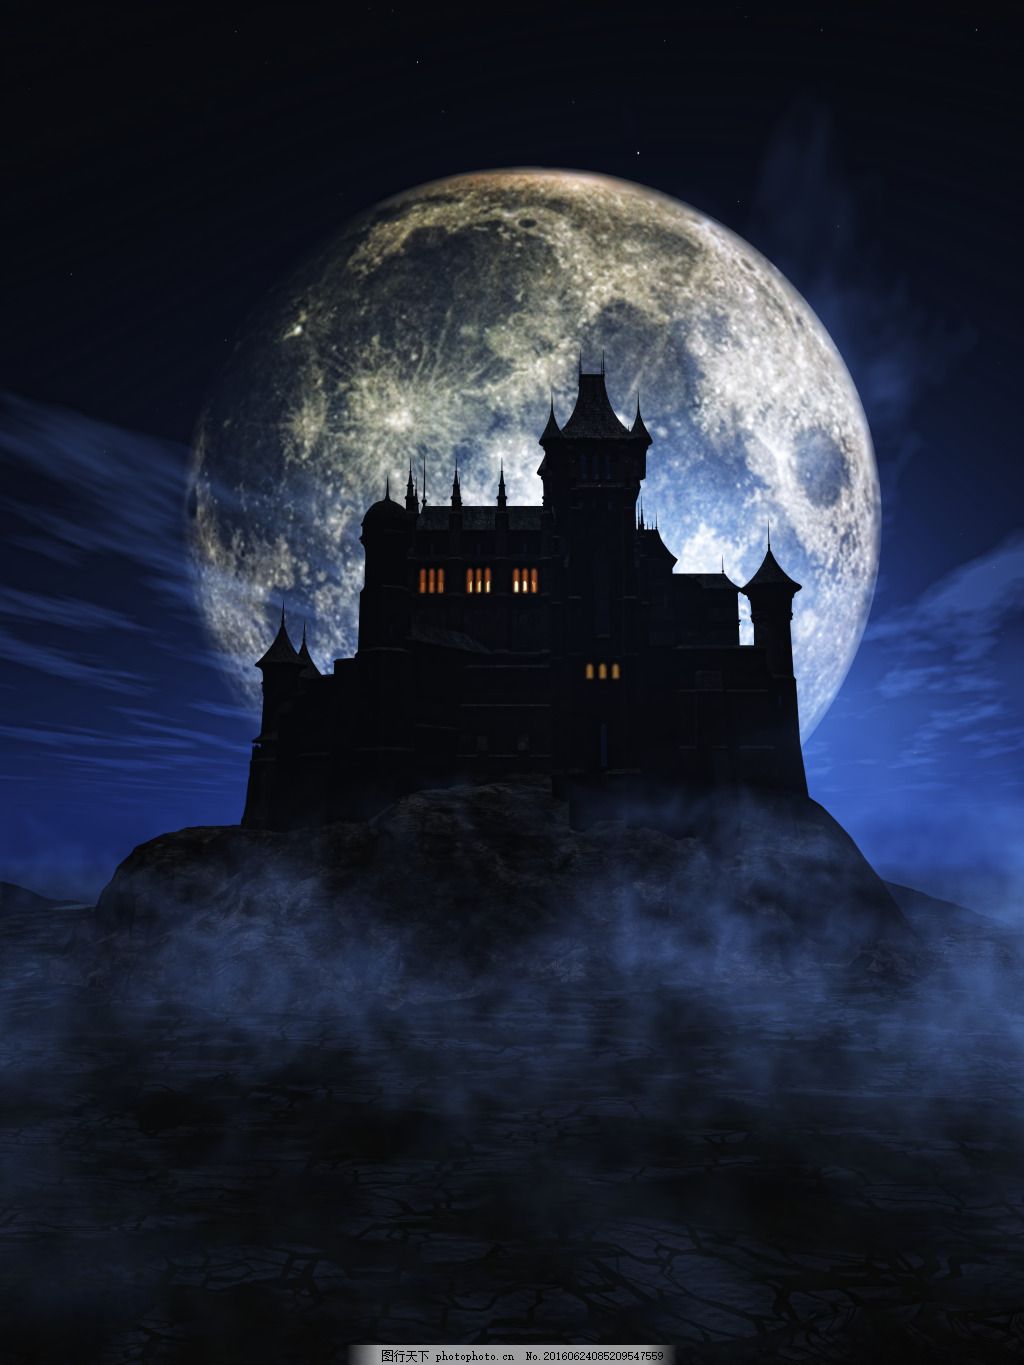 300+ ฟรี Castle Moon & ปราสาท รูปภาพ - Pixabay